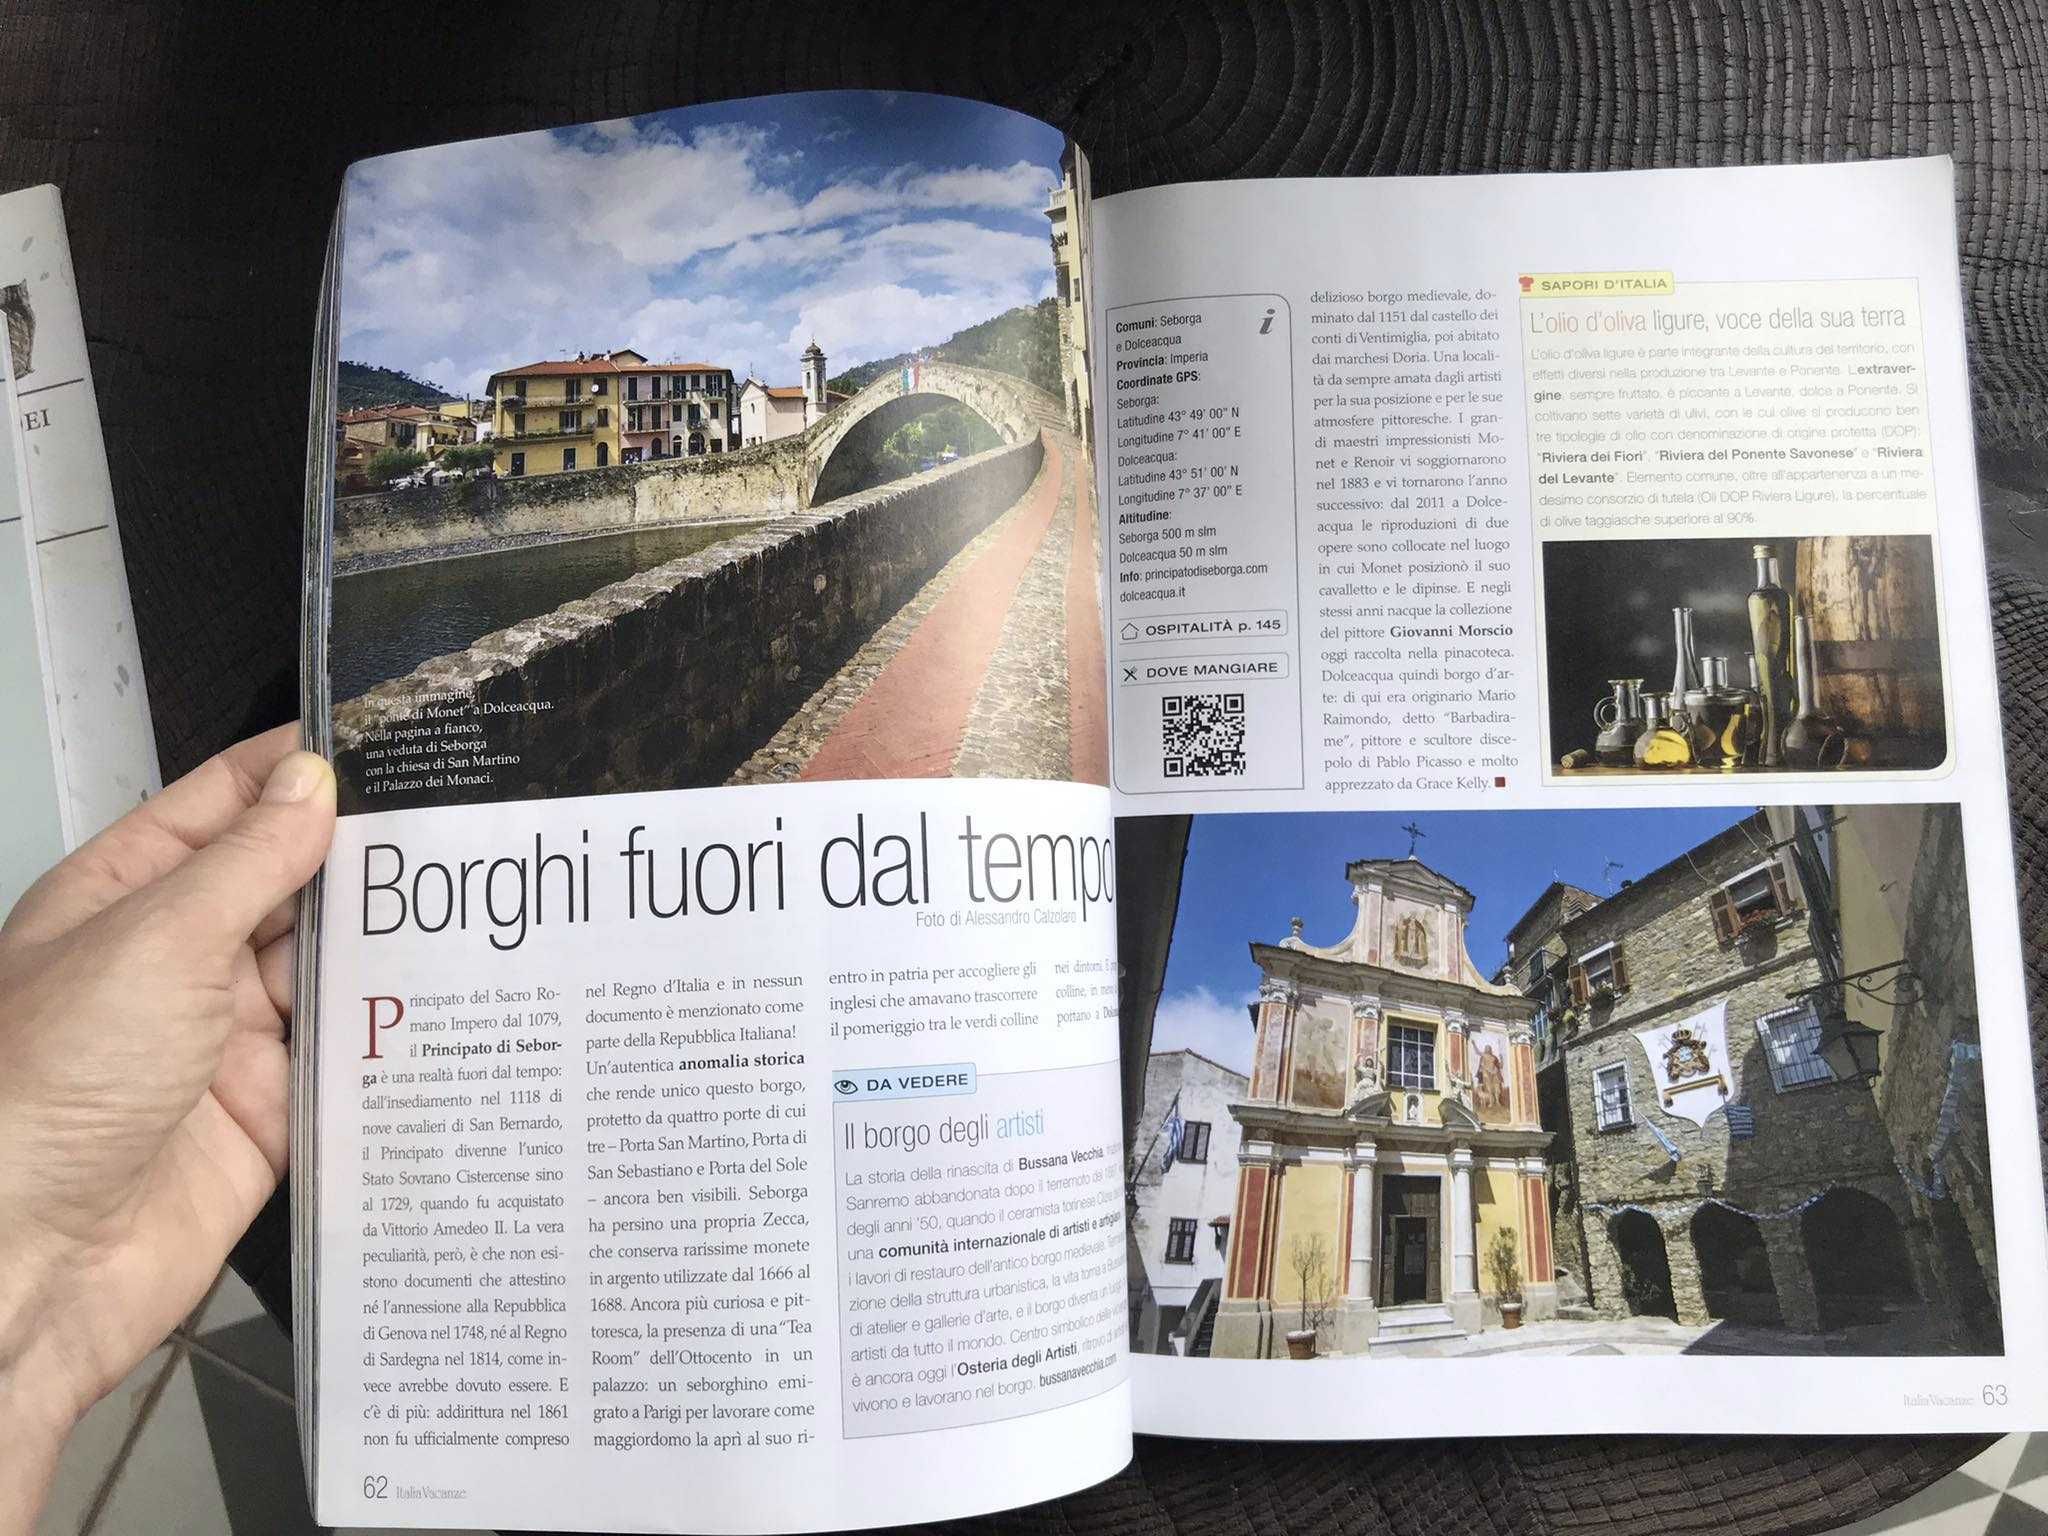 Журнал "Italia vacanze" на итальянском языке